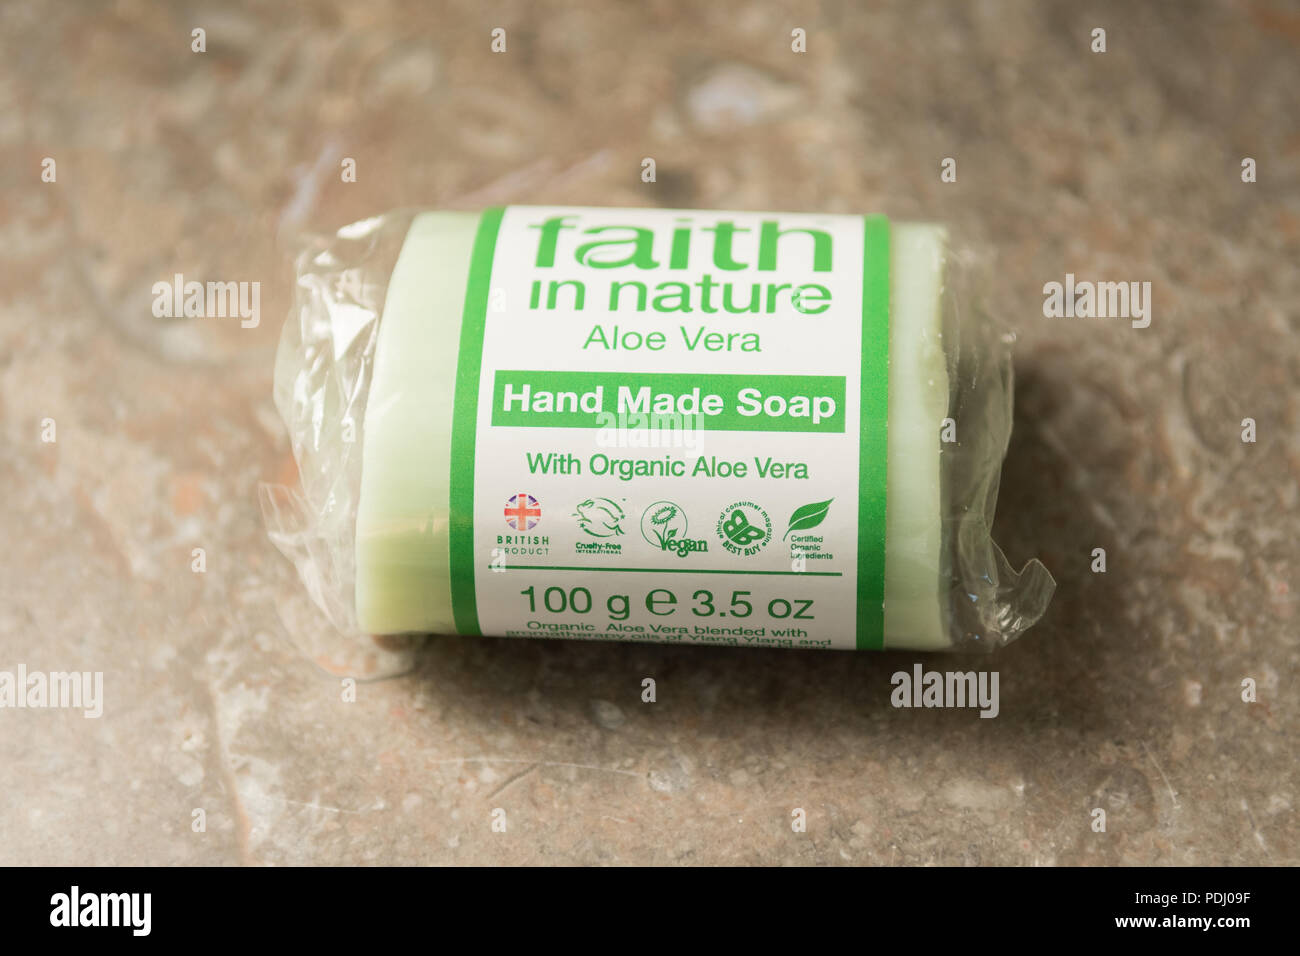 Ethical consumer product - La fede nella natura sapone solido bar Informazioni etichetta - crudeltà libera, organico, vegan simboli Foto Stock